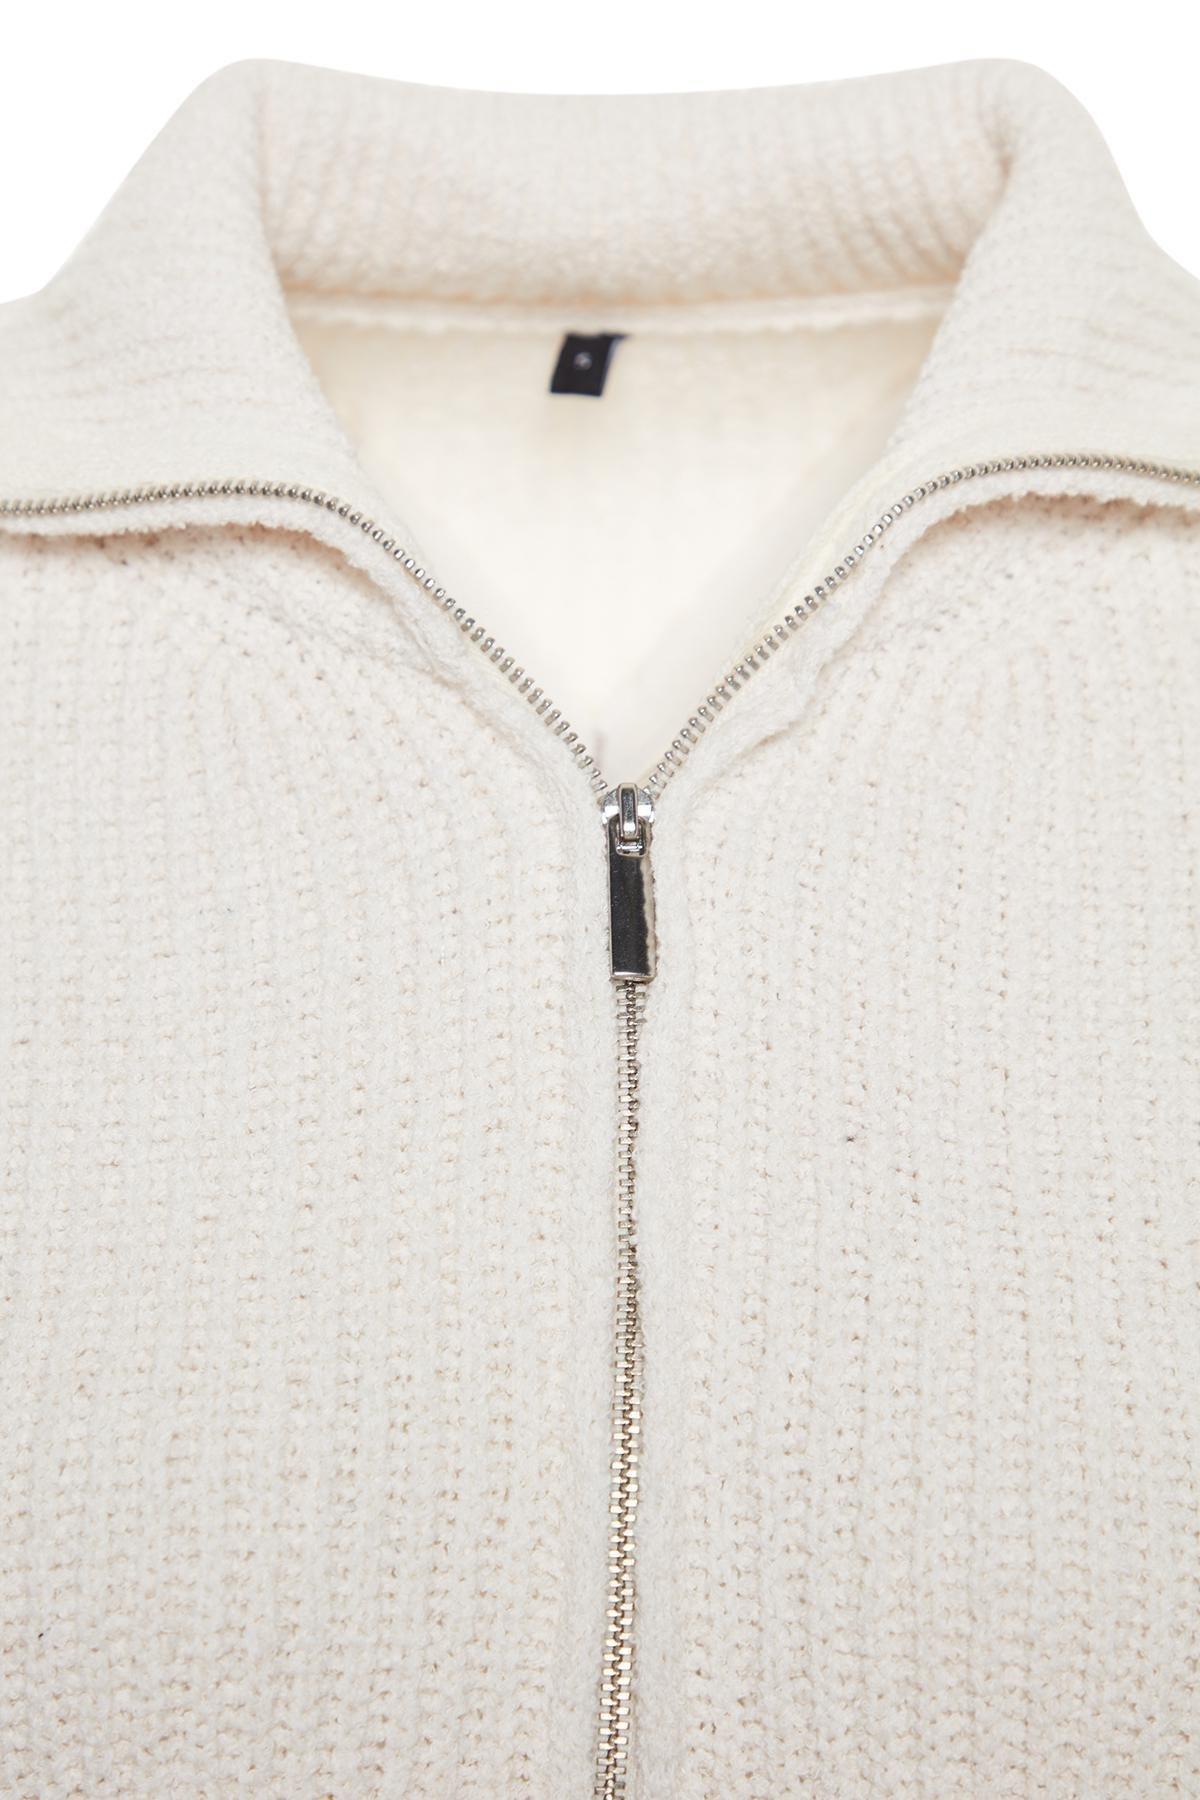 Trendyol - Cream Oversize Knitwear Sweater